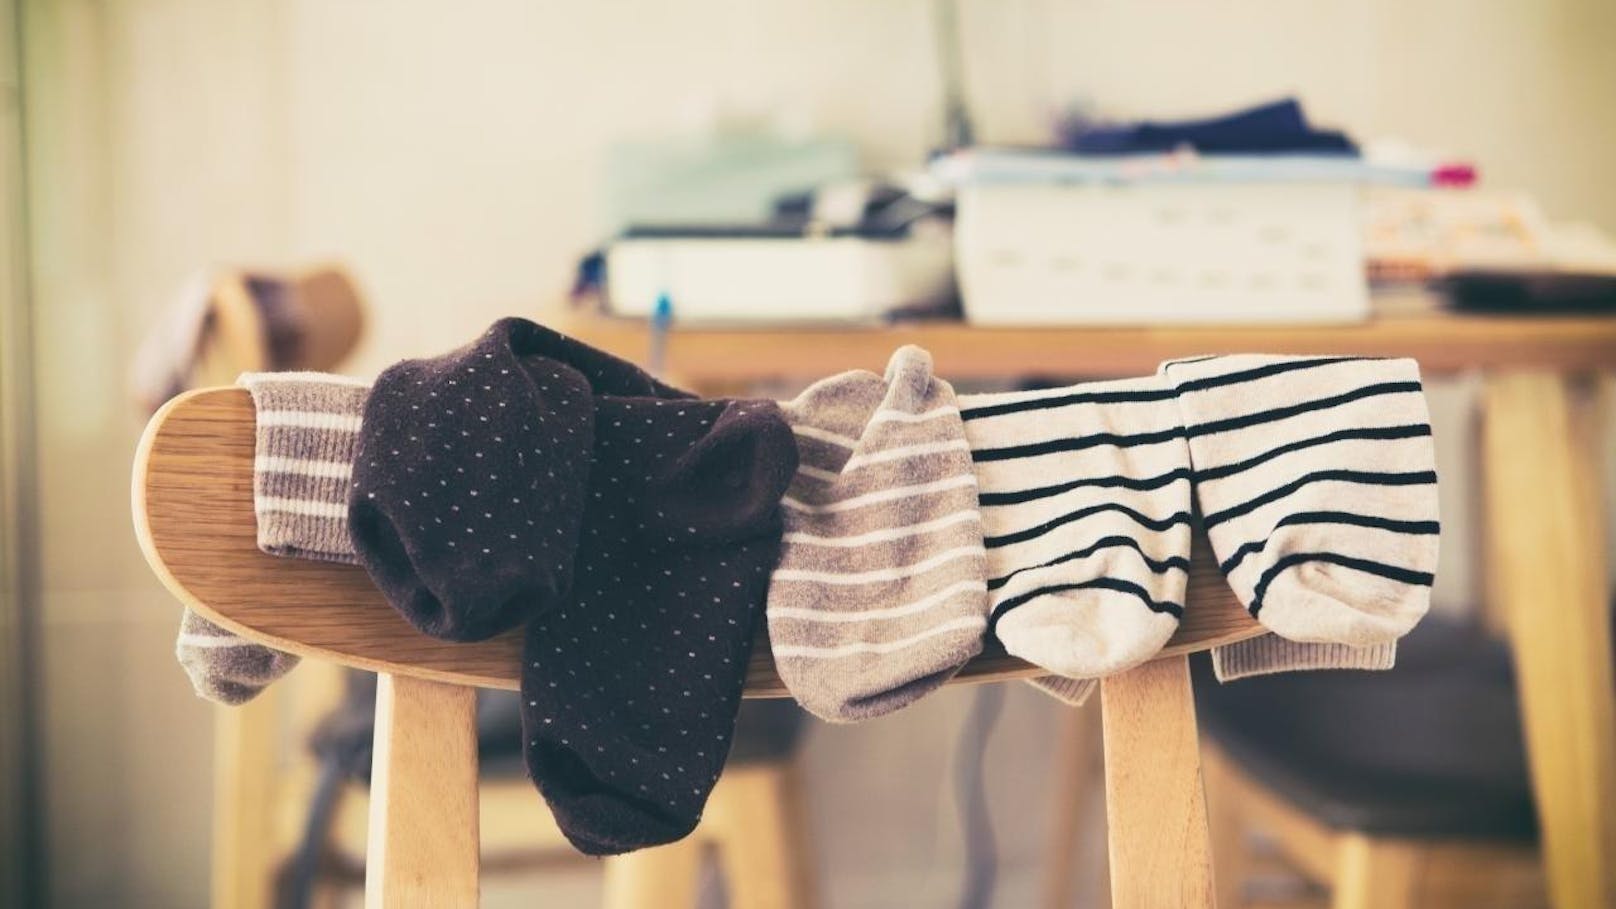 <b>Vermittle einsame Socken:</b>
Nimm die einsamen Socken, die ihren Partner in der Maschine verloren haben, und schau, ob zwei davon zueinanderpassen. Einzelne Socken kommen weg oder werden als Putzfetzen wiederverwertet.